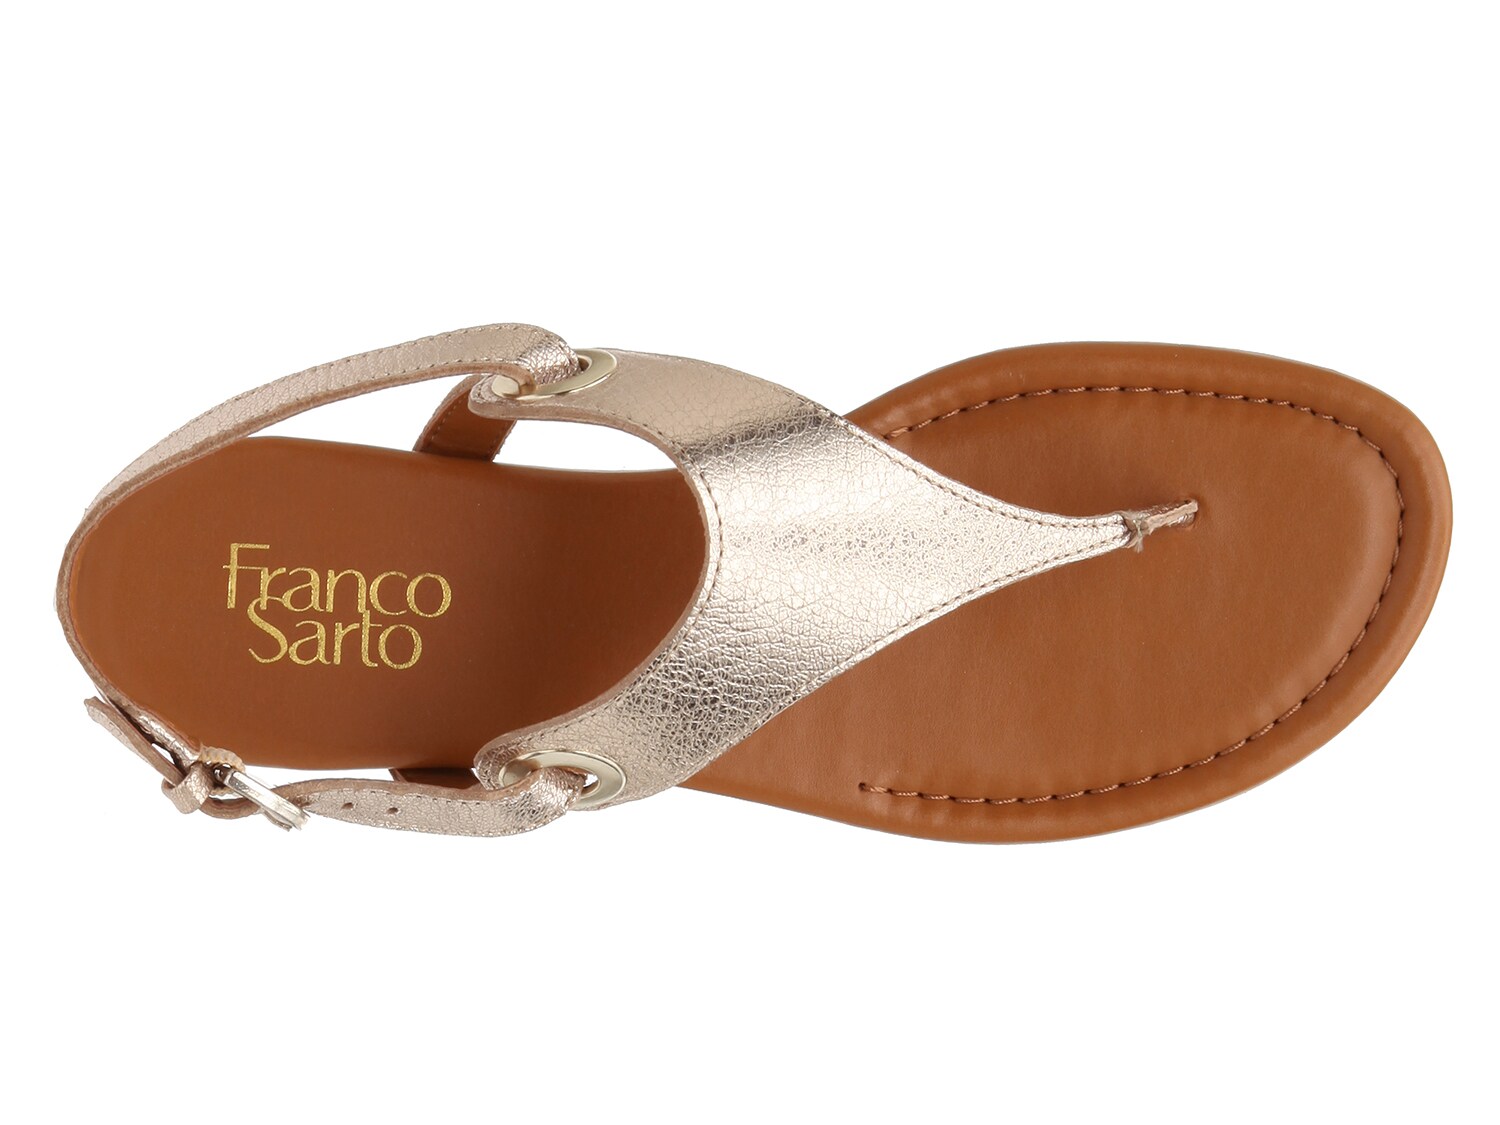 franco sarto goldy sandal